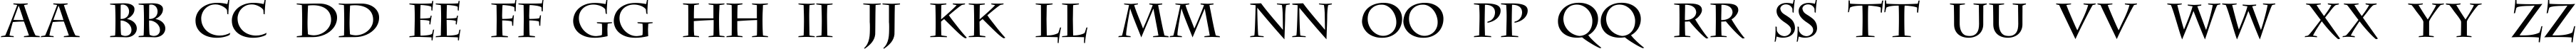 Пример написания английского алфавита шрифтом DS CenturyCapitals